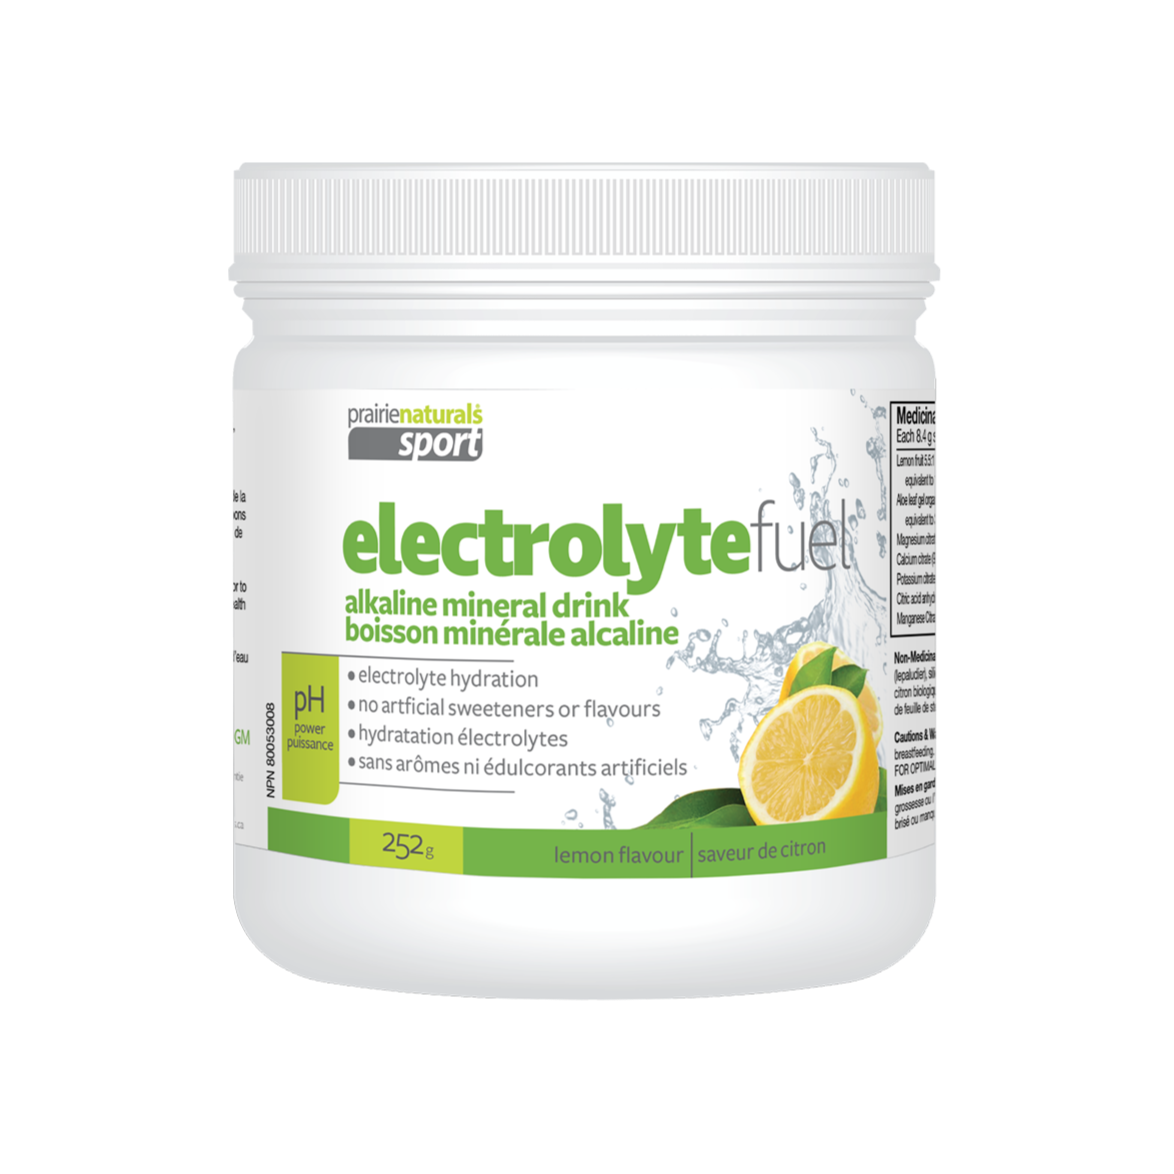 Prairie Naturals Electrolyte Fuel - Lemon Flavour 252g